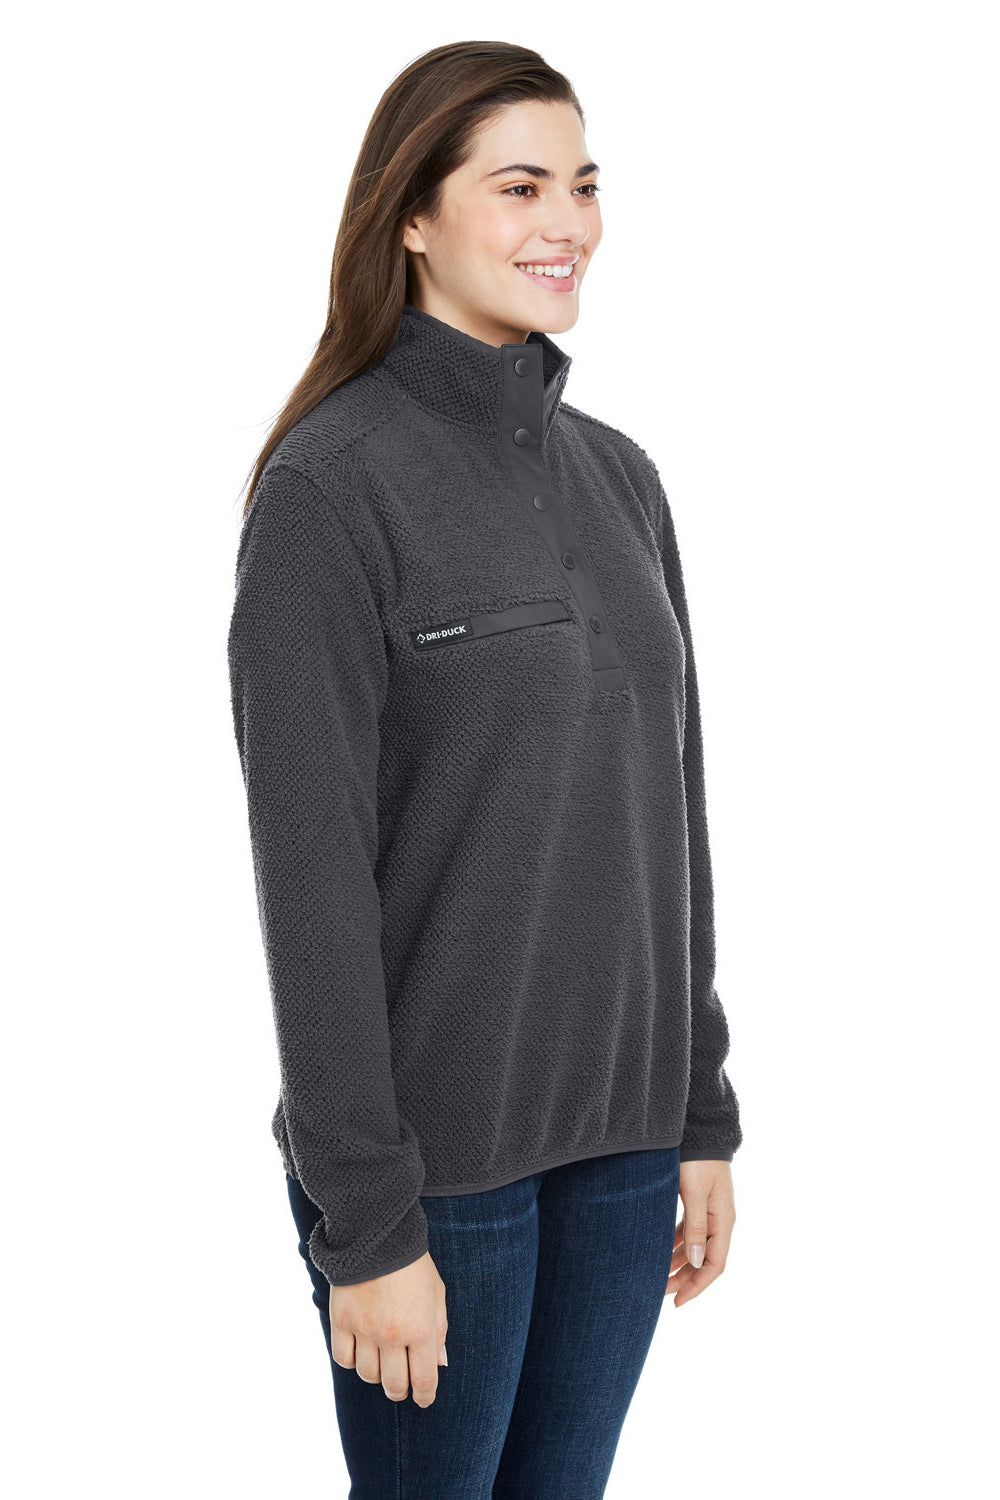 Dri Duck 9345 Womens Cypress Sherpa Fleece 1/4 Snap Sweatshirt Charcoal Grey 3Q